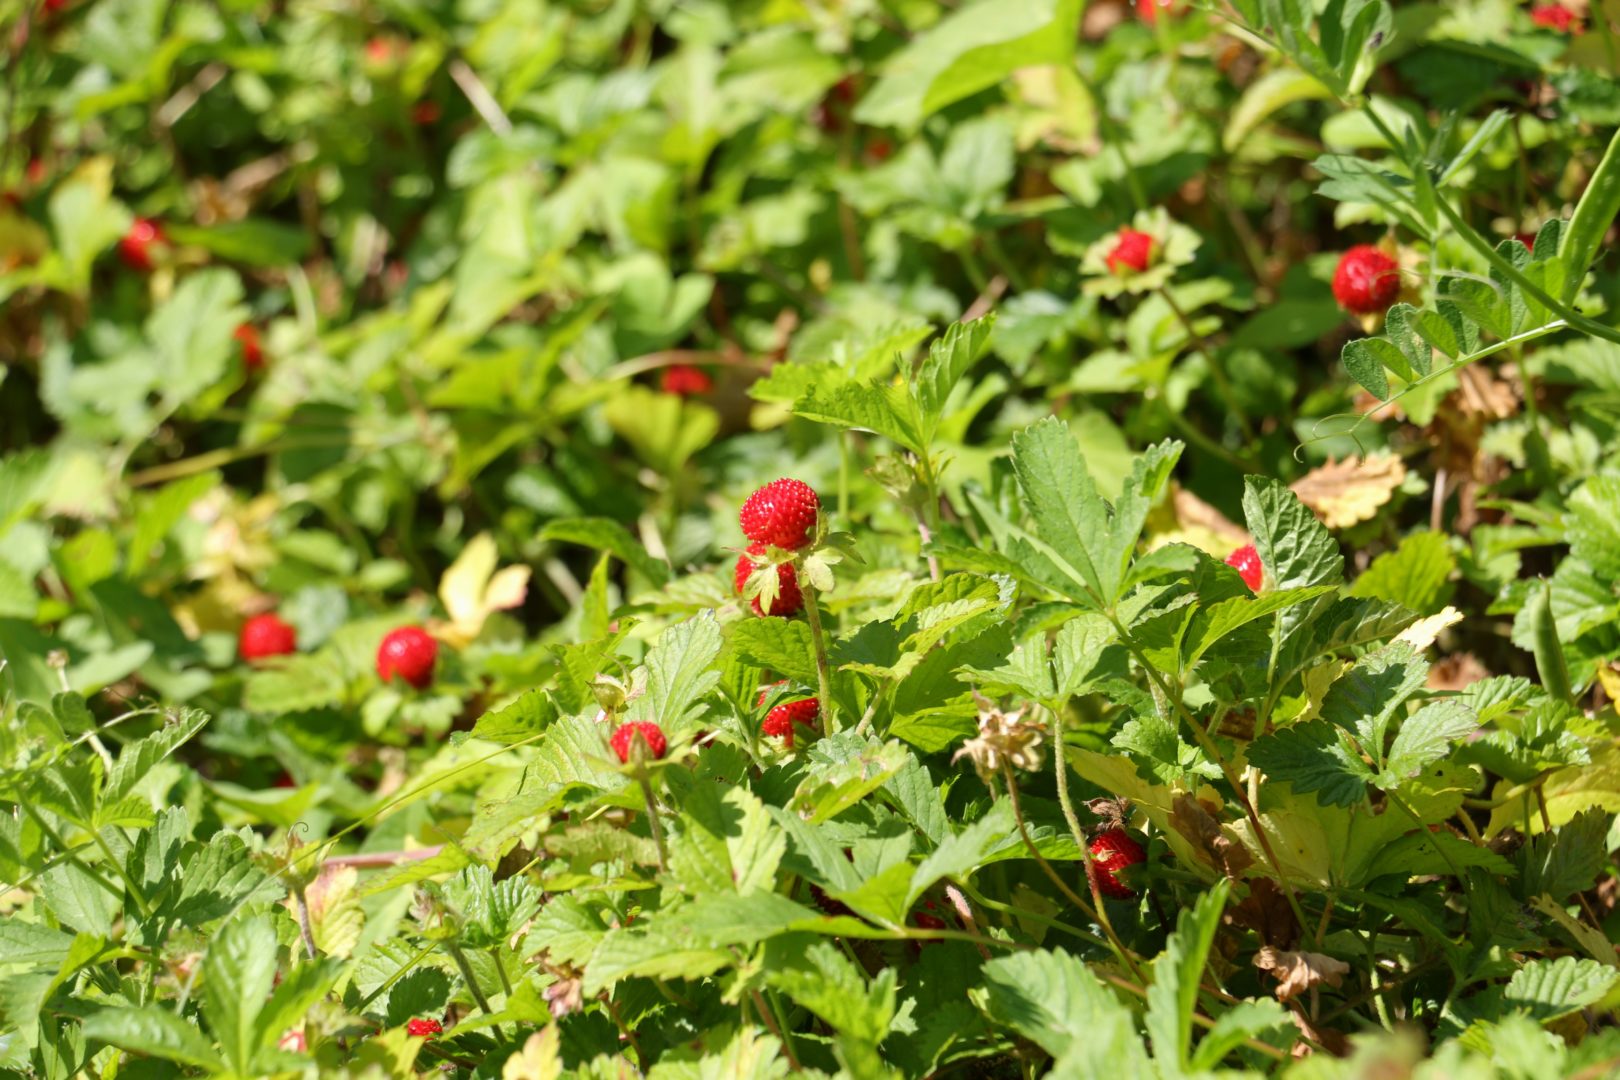 растение с красными ягодами, похоже на клубнику - Лапчатка индийская, или дюшения, или ложная земляника